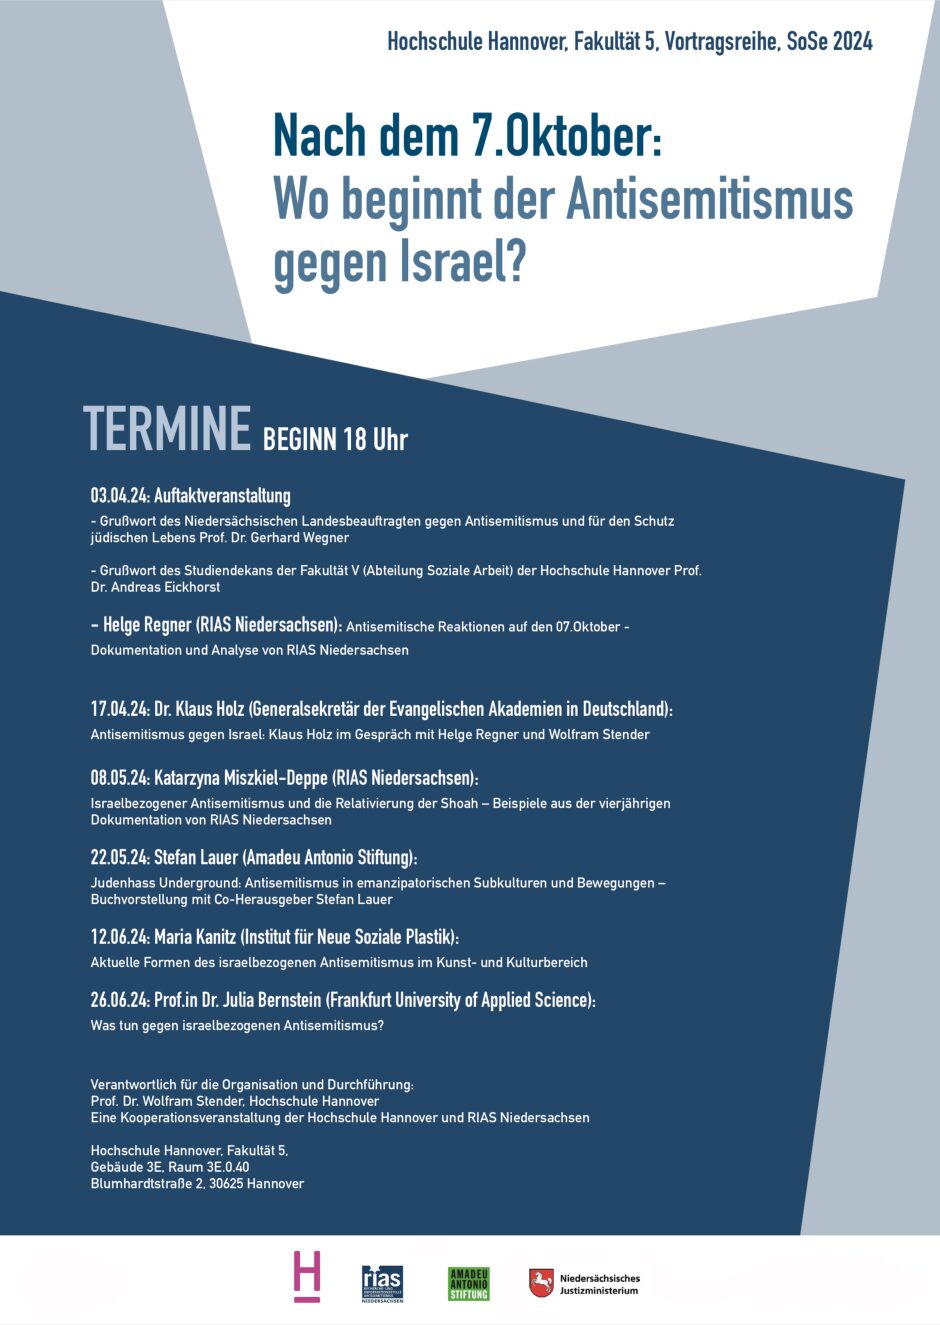 Aktuelle Formen des israelbezogenen Antisemitismus im Kunst- und Kulturbereich (mit Maria Kanitz, Institut für Neue Soziale Plastik e.V.)